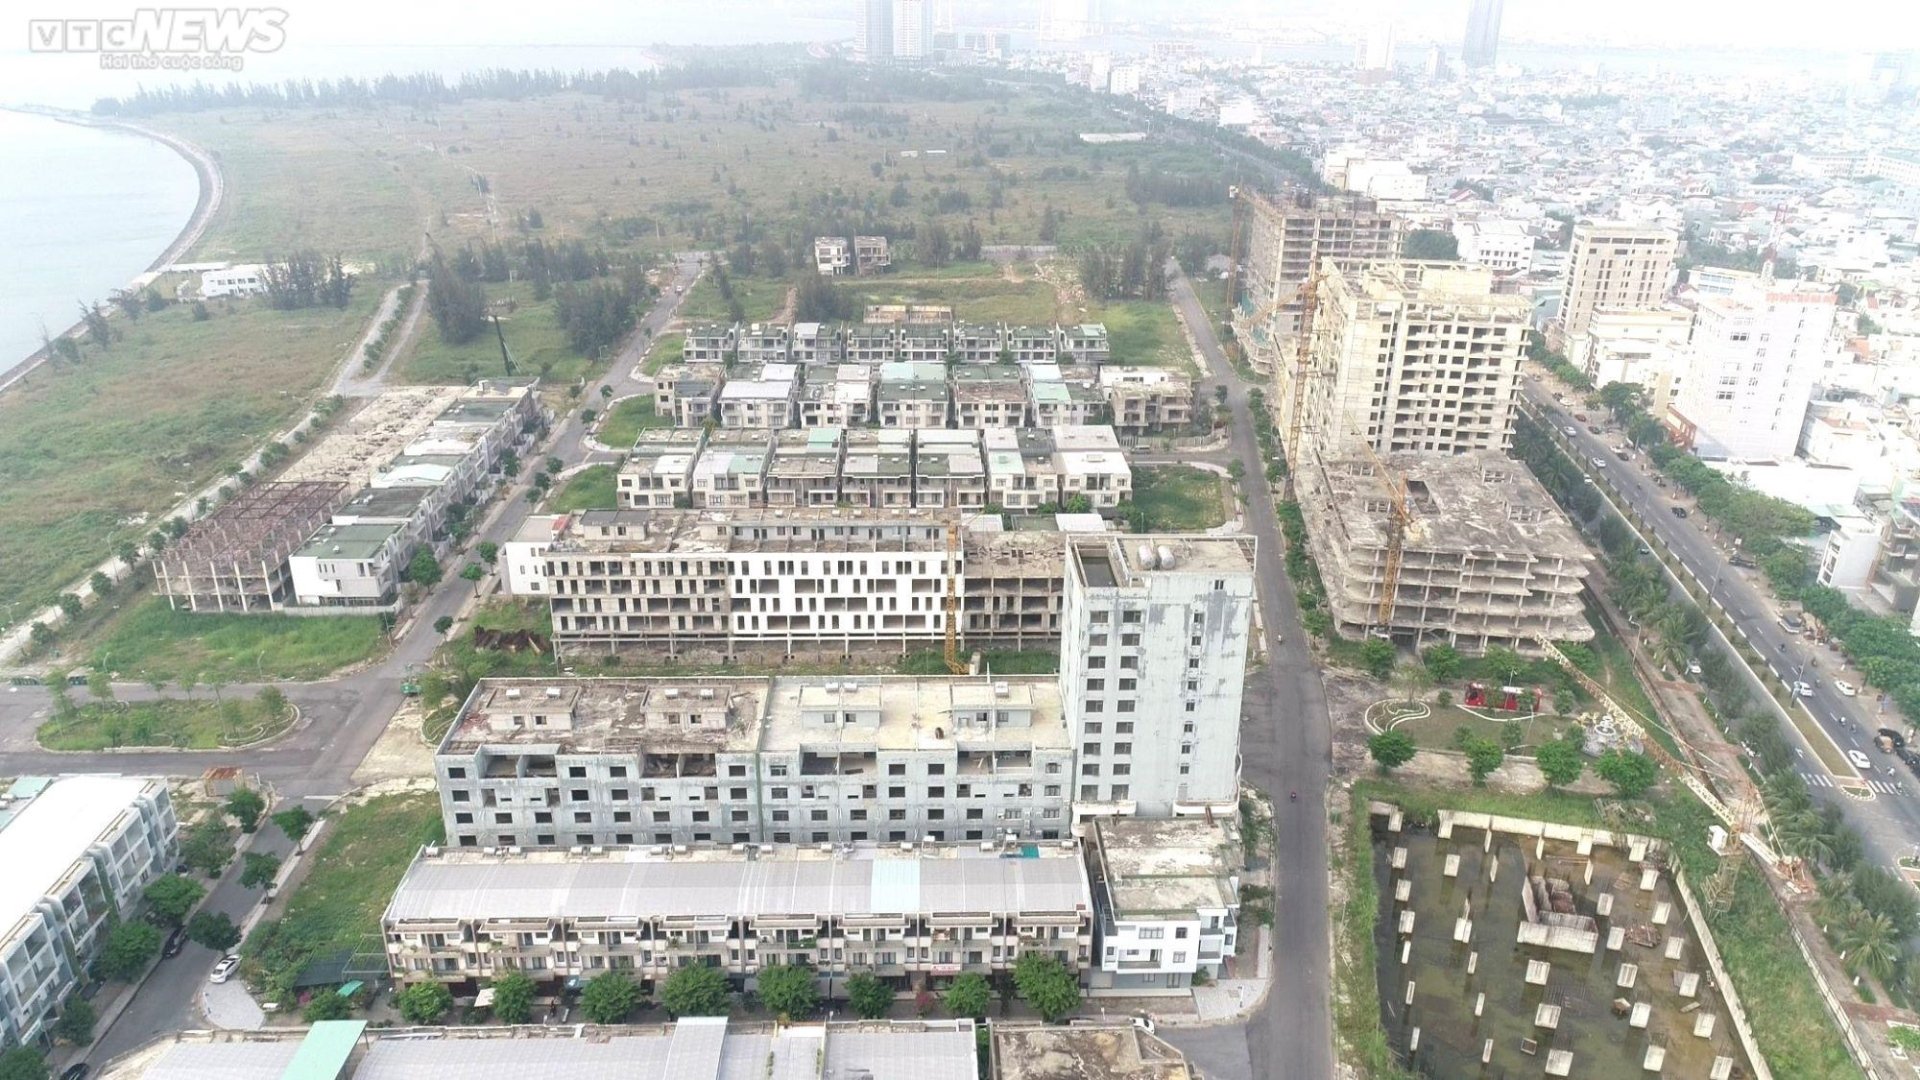 Cảnh hoang tàn ‘siêu dự án’ khu đô thị lấn biển Đà Nẵng - Ảnh 1.